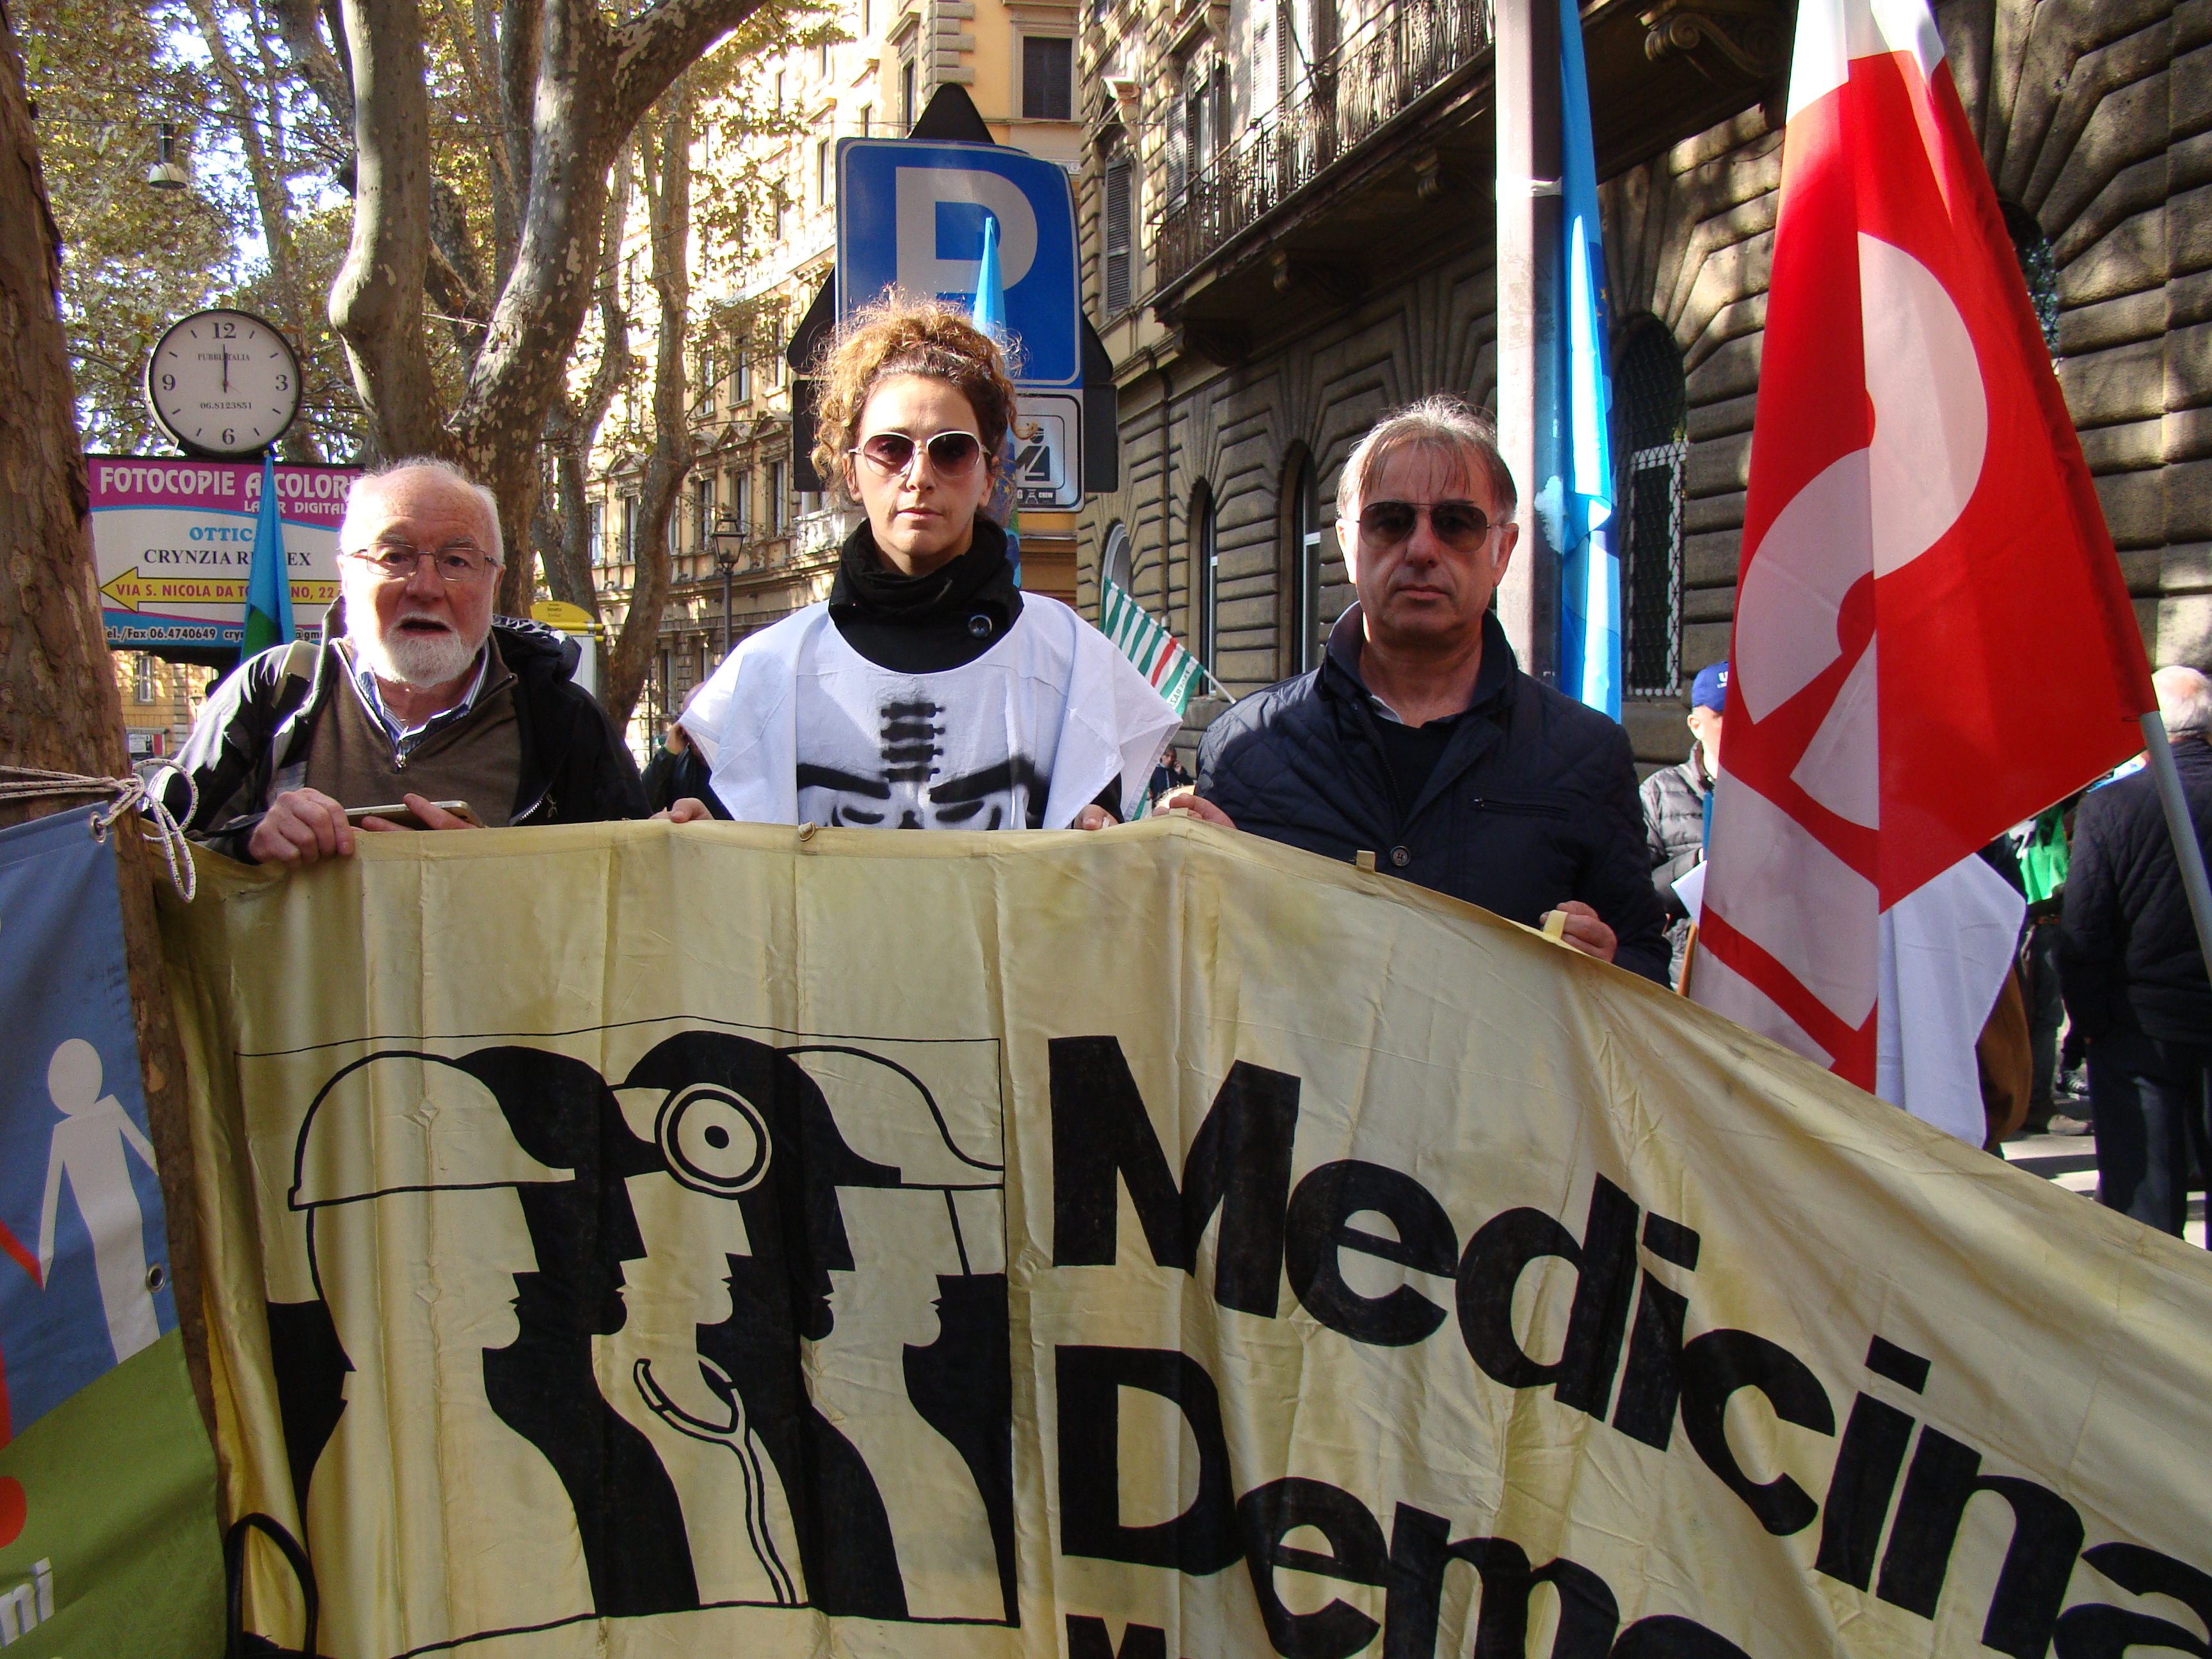 Appello di Medicina Democratica: oltre l'emergenza, necessaria una svolta decisiva nella gestione
della sanità pubblica in Italia. Profondo cordoglio per i medici deceduti, vittime del lavoro.